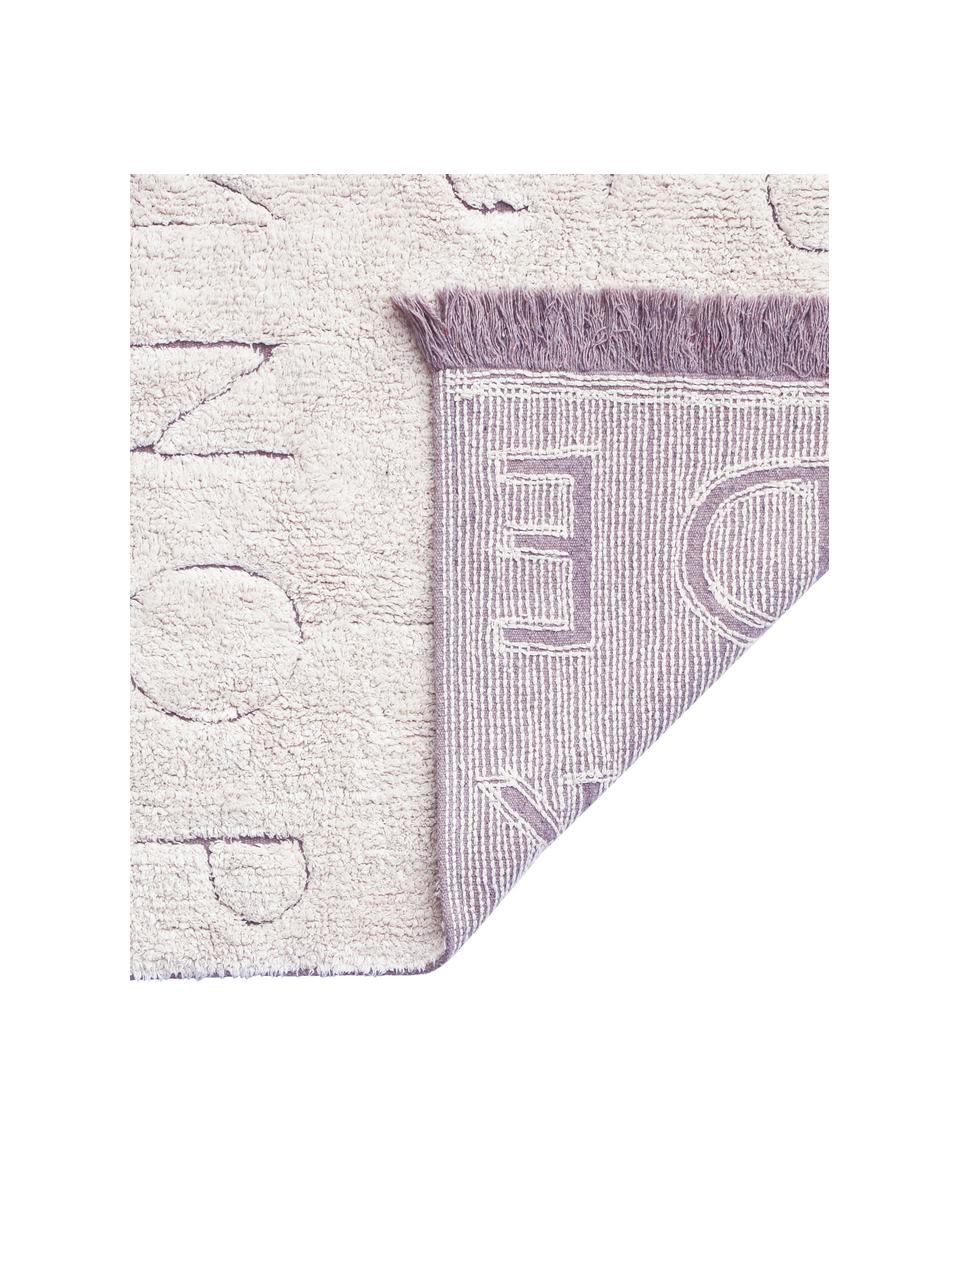 Waschbarer Teppich ABC mit Buchstaben Design und Fransenabschluss, Flor: 97% Baumwolle 3% Gemischt, Beige, B 120 x L 160 cm (Größe S)